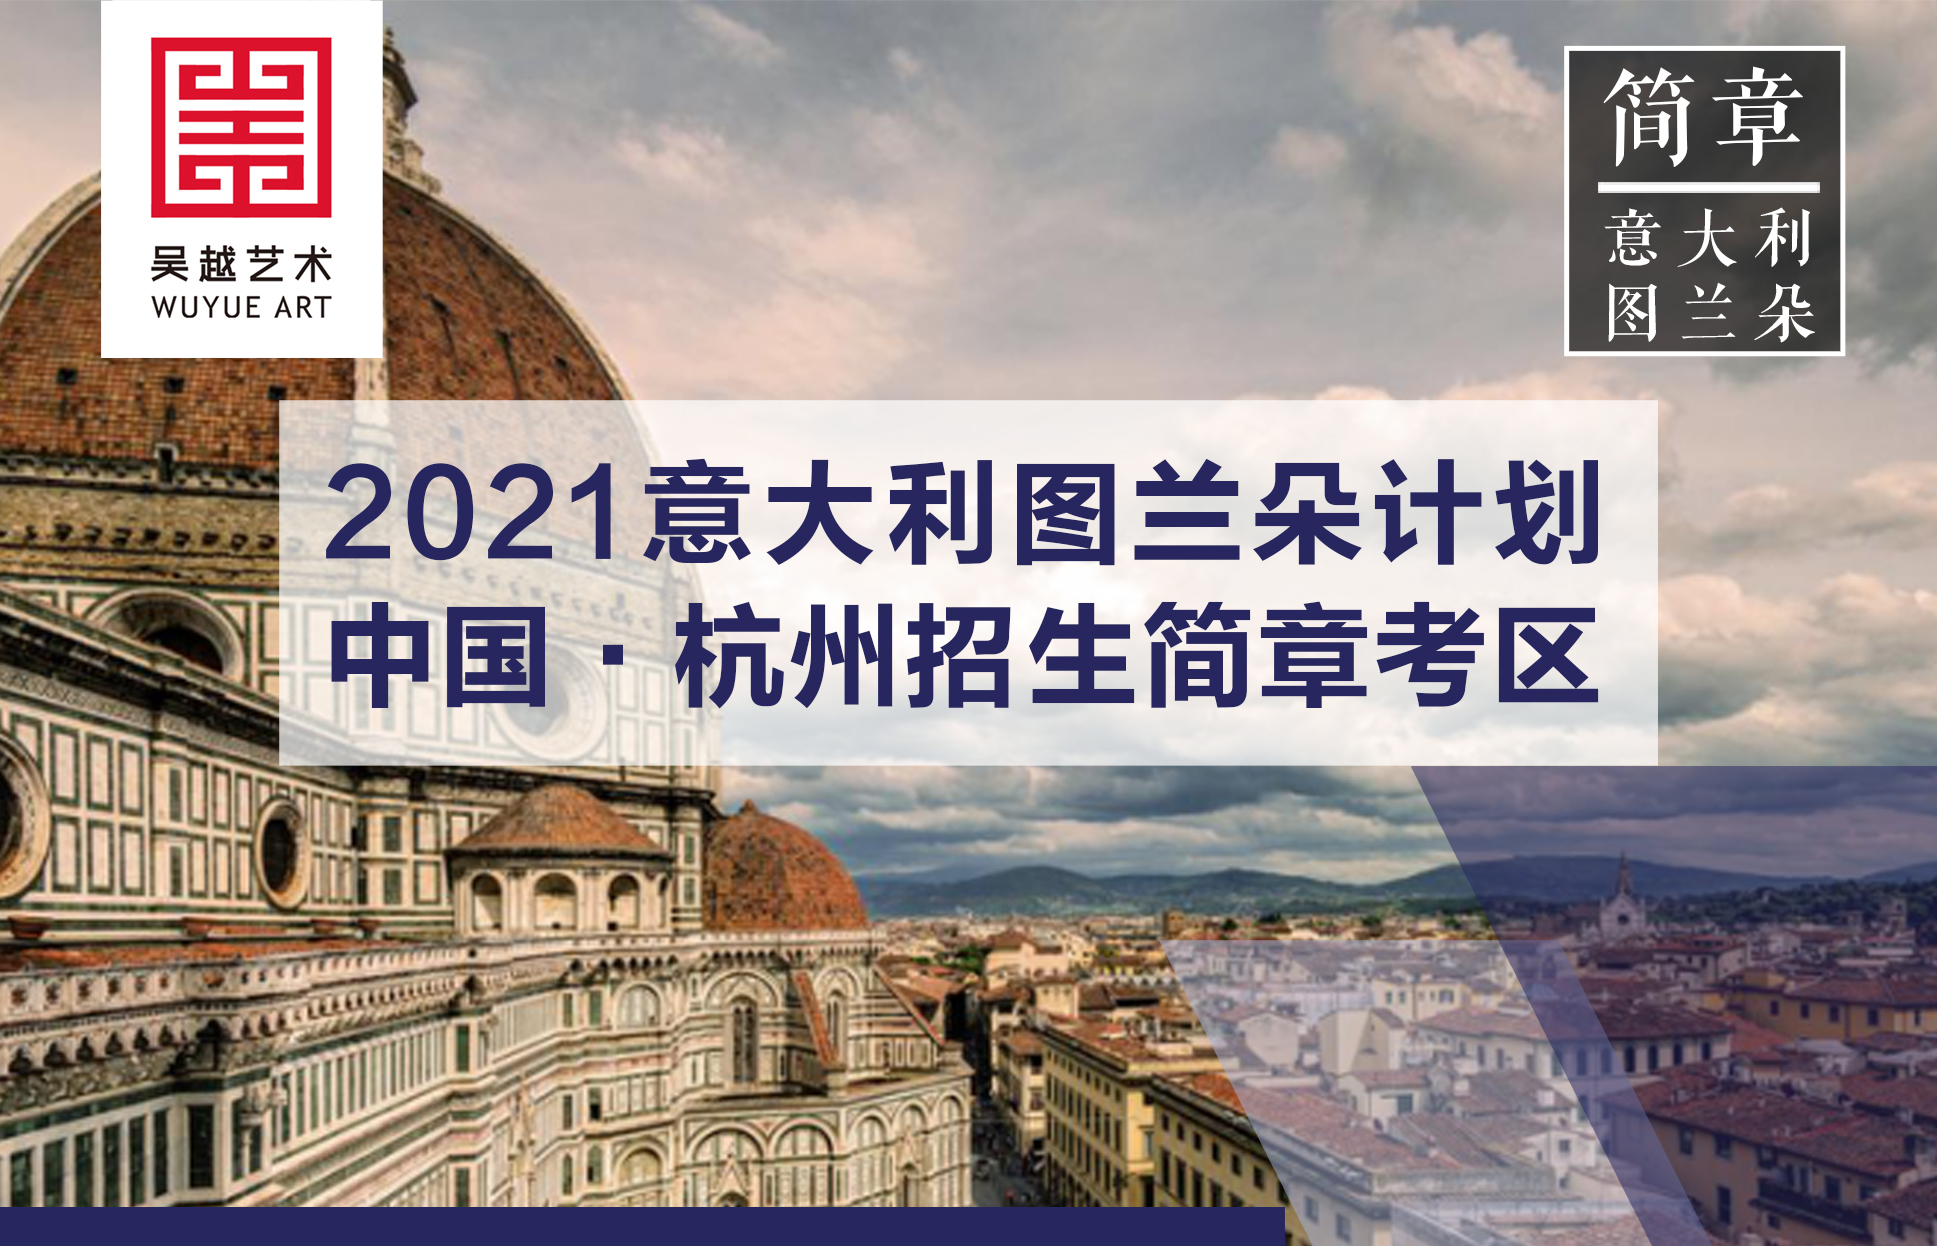 意大利留学 | 杭州吴越画室：2020-2021意大利图兰朵计划国际生招生简章